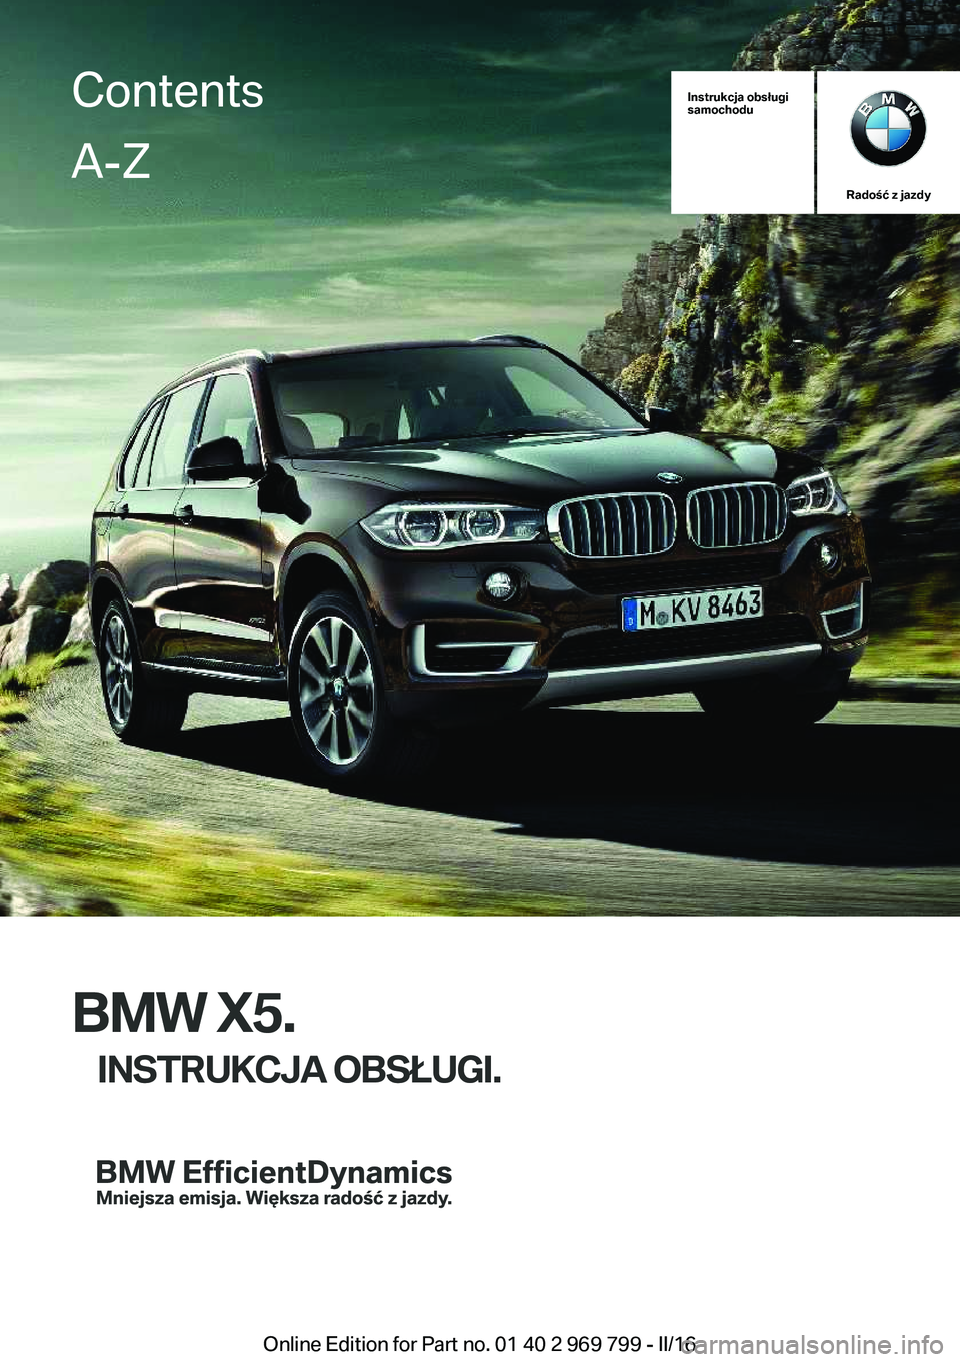 BMW X5 2016  Instrukcja obsługi (in Polish) Instrukcja obsługi
samochodu
Radość z jazdy
BMW X5.
INSTRUKCJA OBSŁUGI.
ContentsA-Z
Online Edition for Part no. 01 40 2 969 799 - II/16   